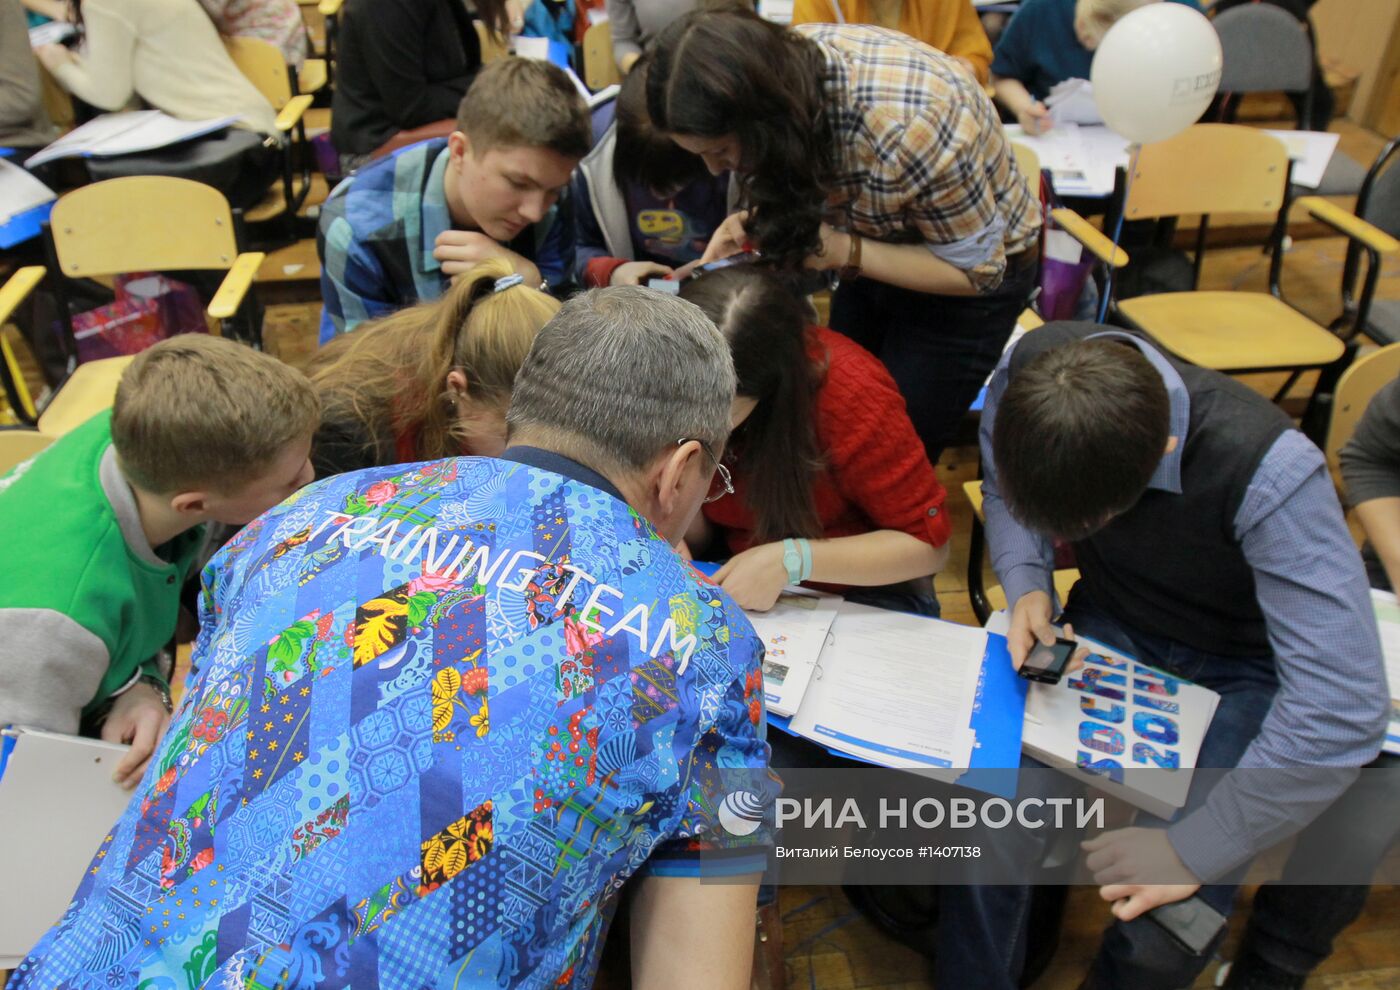 Старт обучения волонтеров "Сочи-2014"